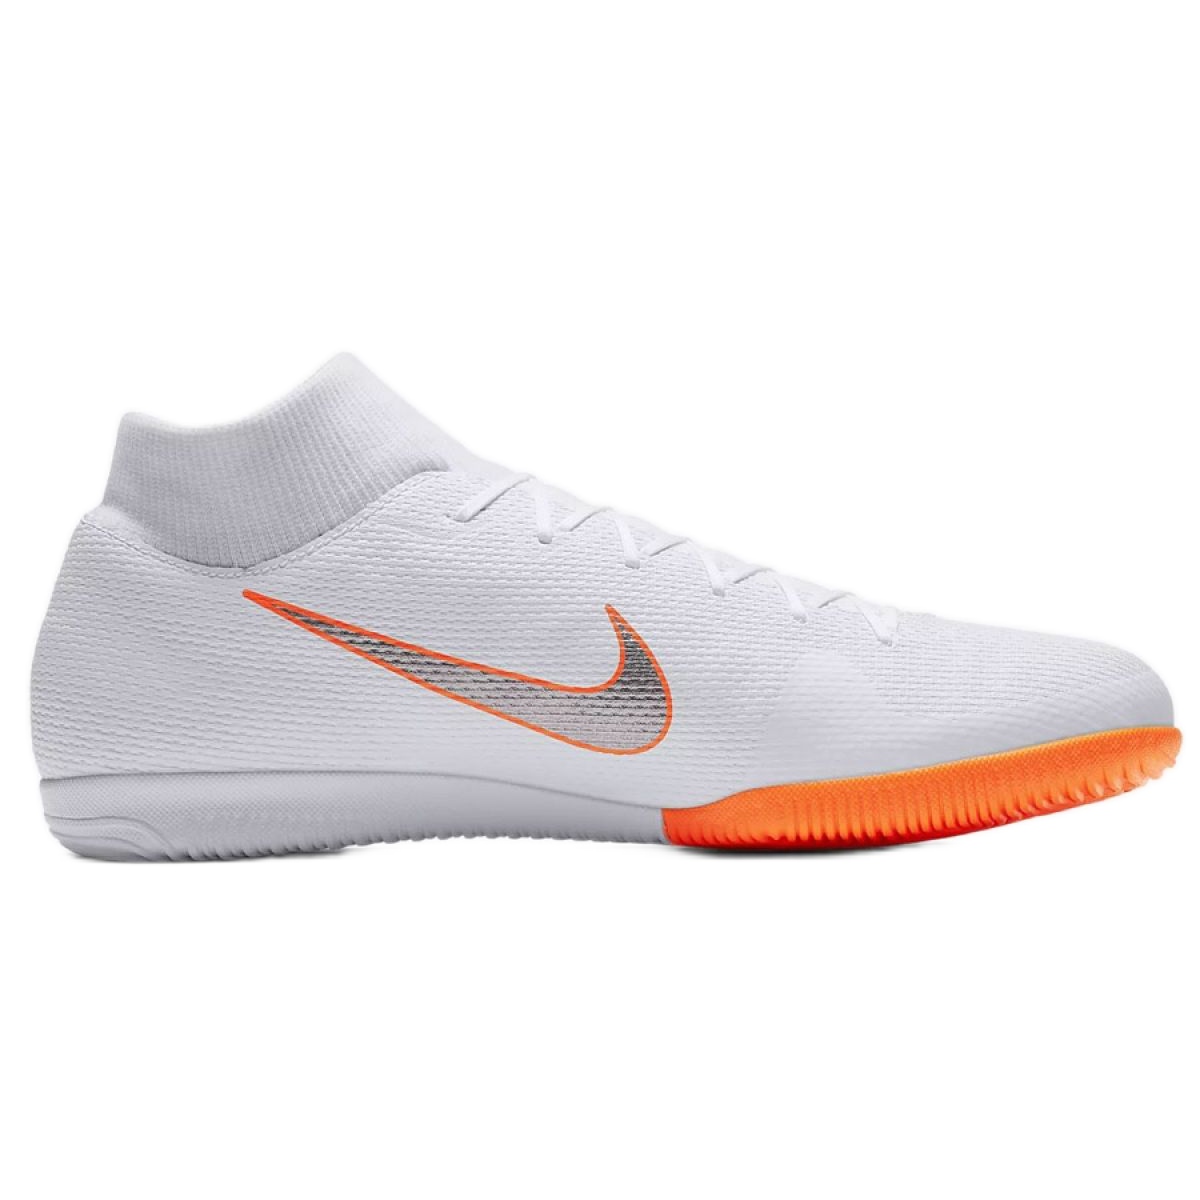 Indendørssko Nike Merurial 6 Academy M AH7369-107 hvid hvid KeeShoes